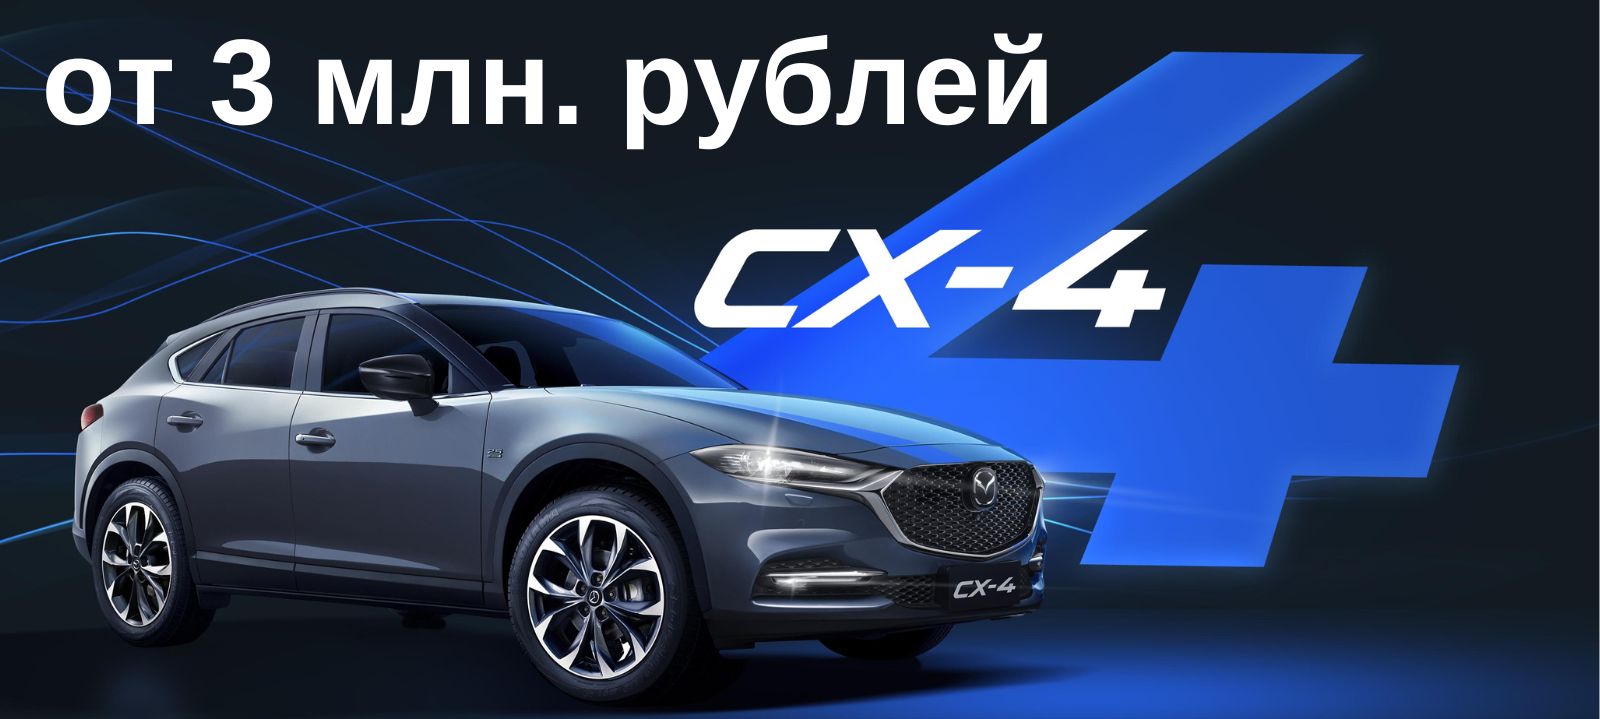 Успейте приобрести автомобиль Mazda CX-4 по акционной цене!